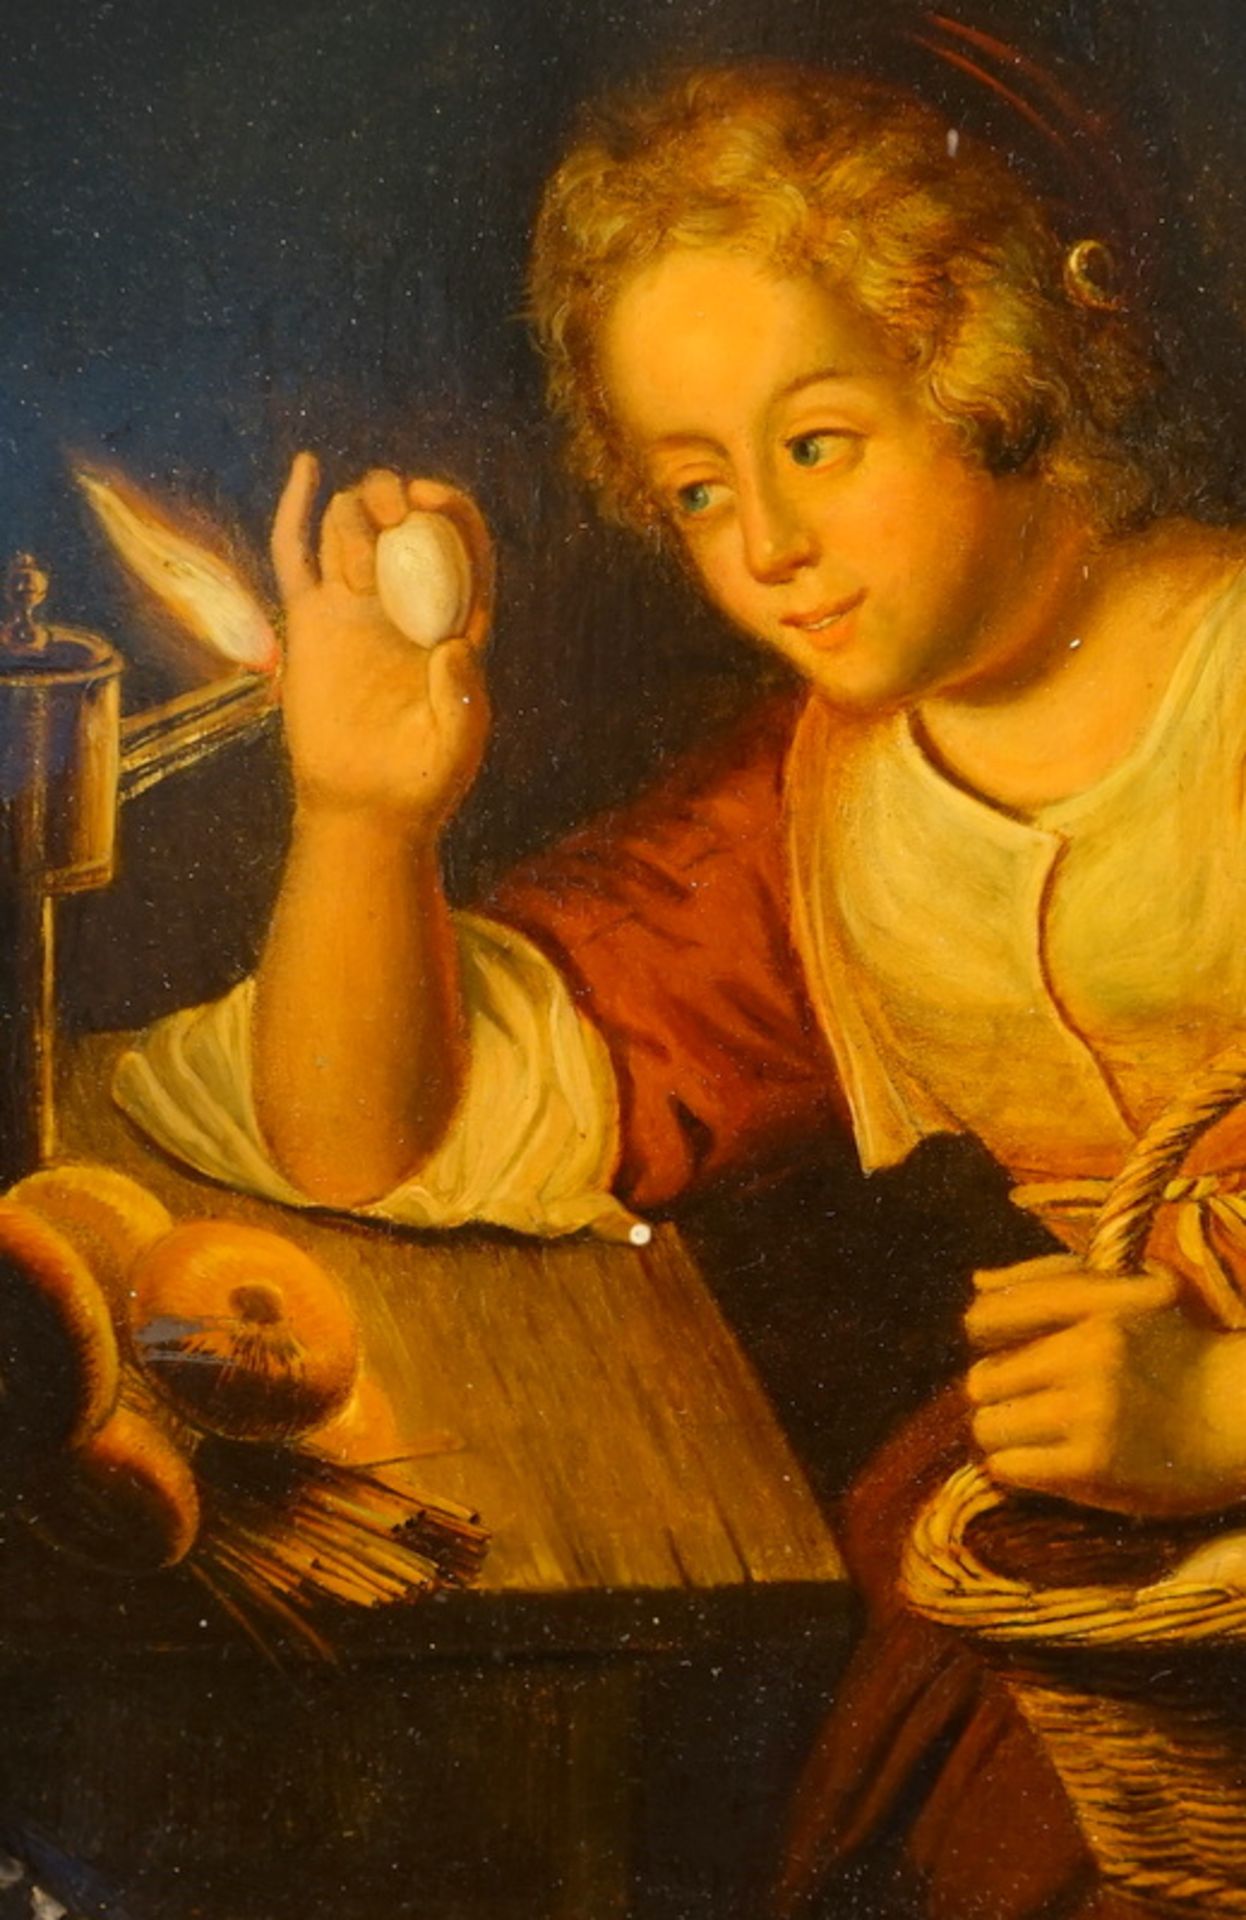 Stobwasser Lackwarenmanufaktur Braunschweig: Junge Frau beim nächtlichem Examinieren von Eiern - Image 2 of 3